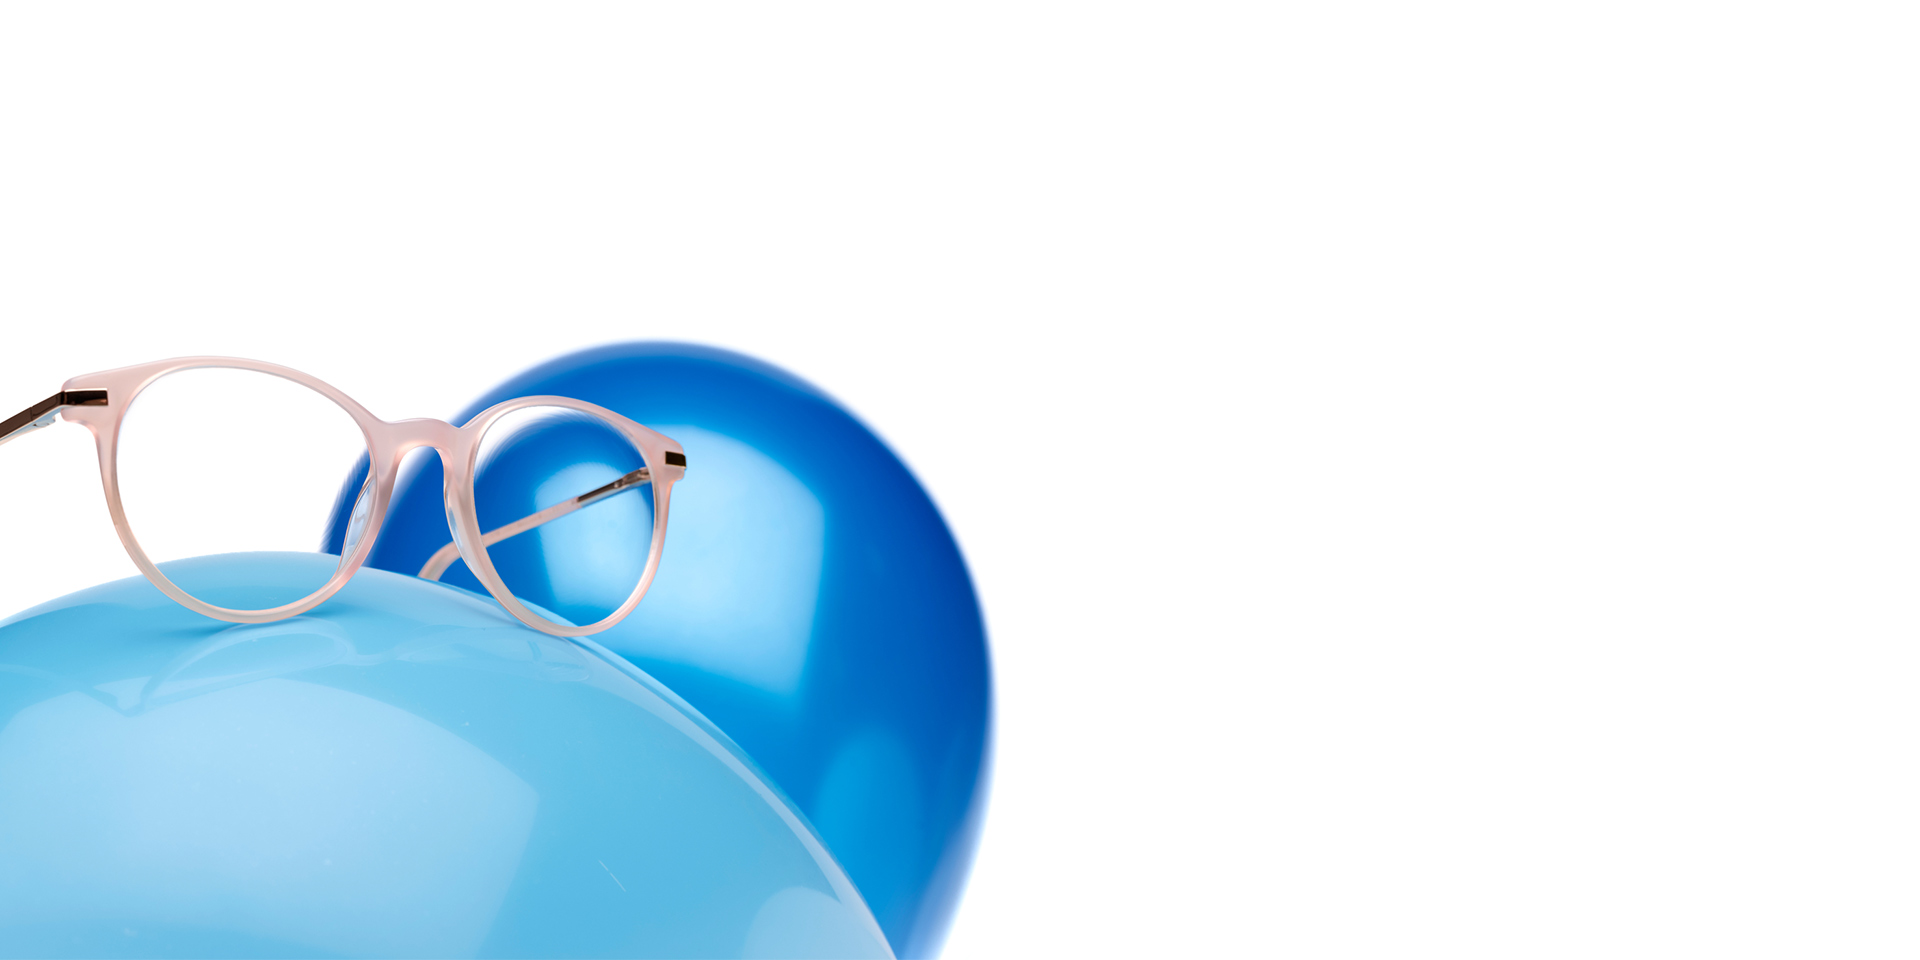 ZEISS MyoCare-brilleglas er vist med et beige-rødt stel på en lyseblå ballon. I baggrunden er der endnu en ballon i lidt mørkere blåt.